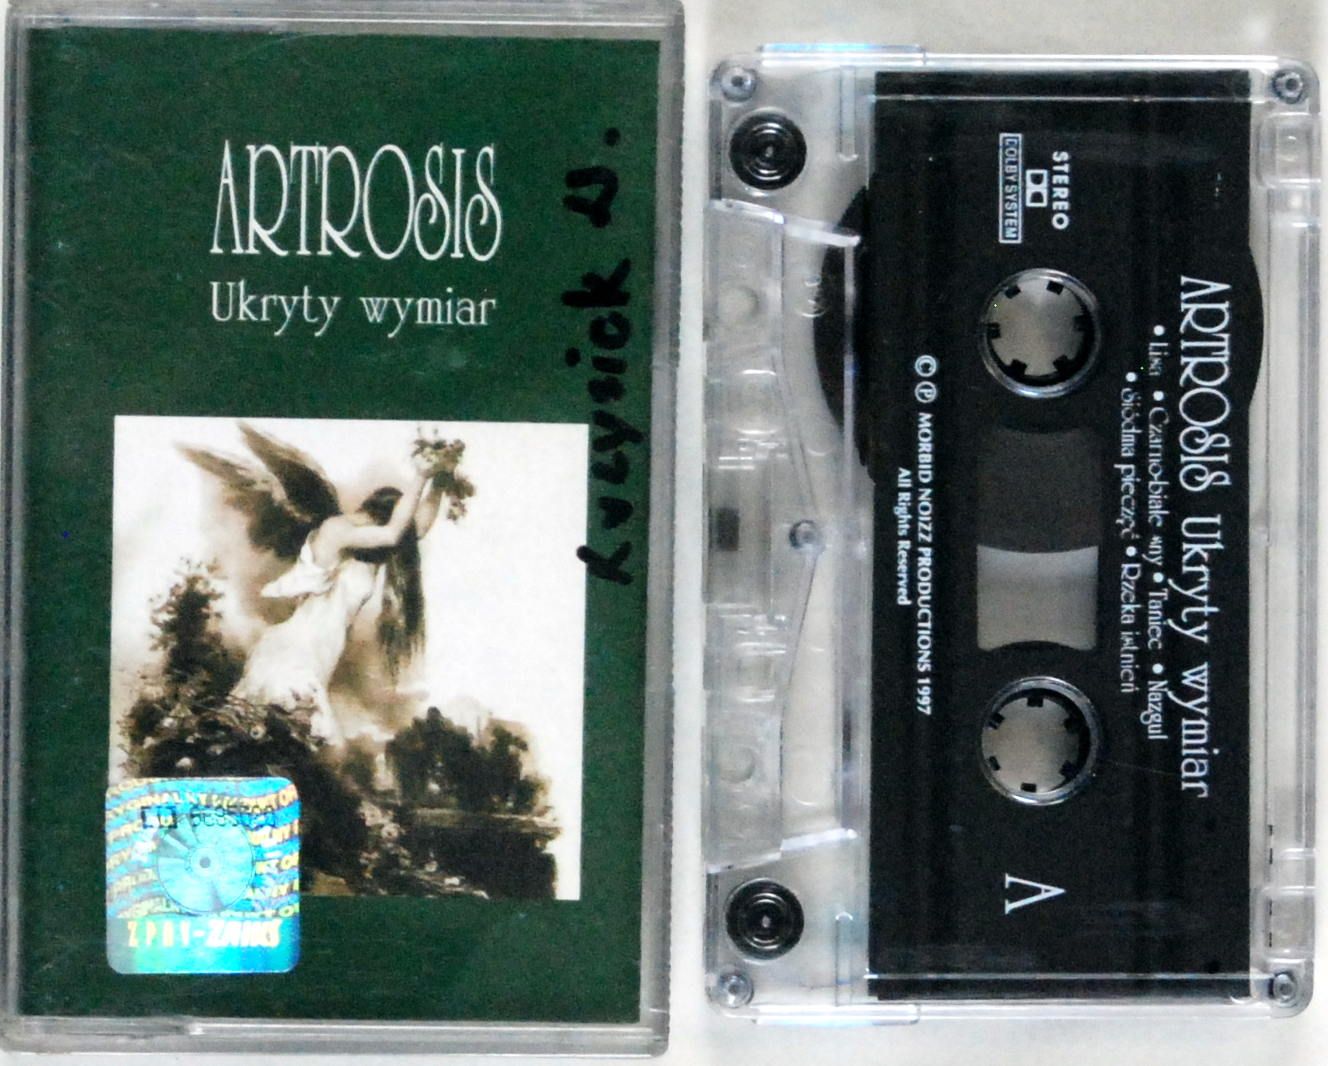 Artrosis - Ukryty Wymiar (kaseta)